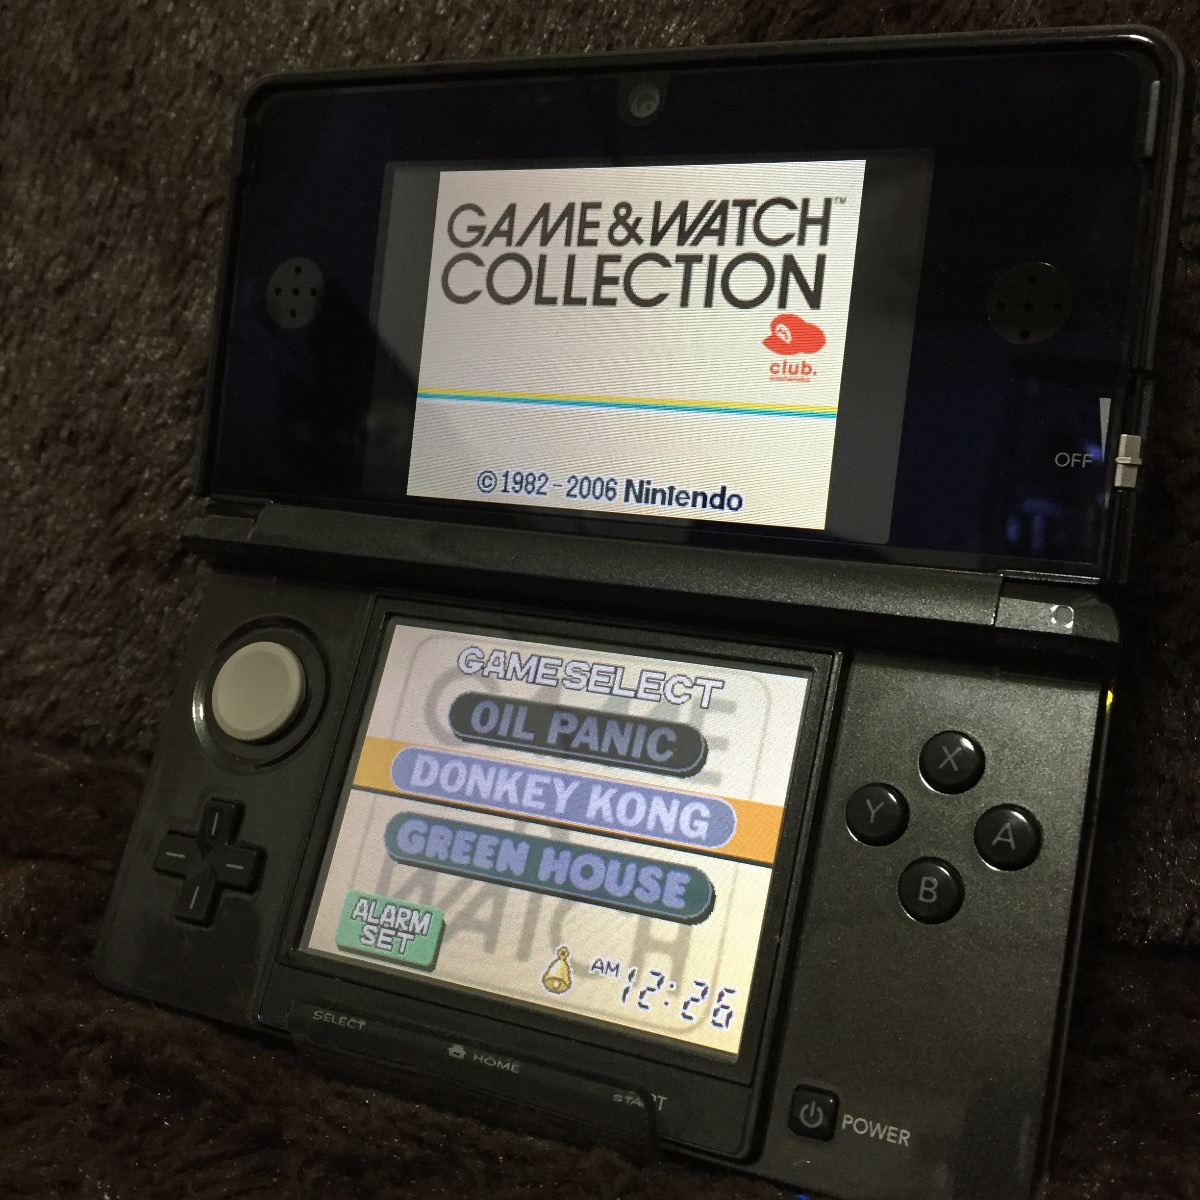 beforemario: Nintendo Game & Watch Multi Screen (ゲーム&ウォッチ